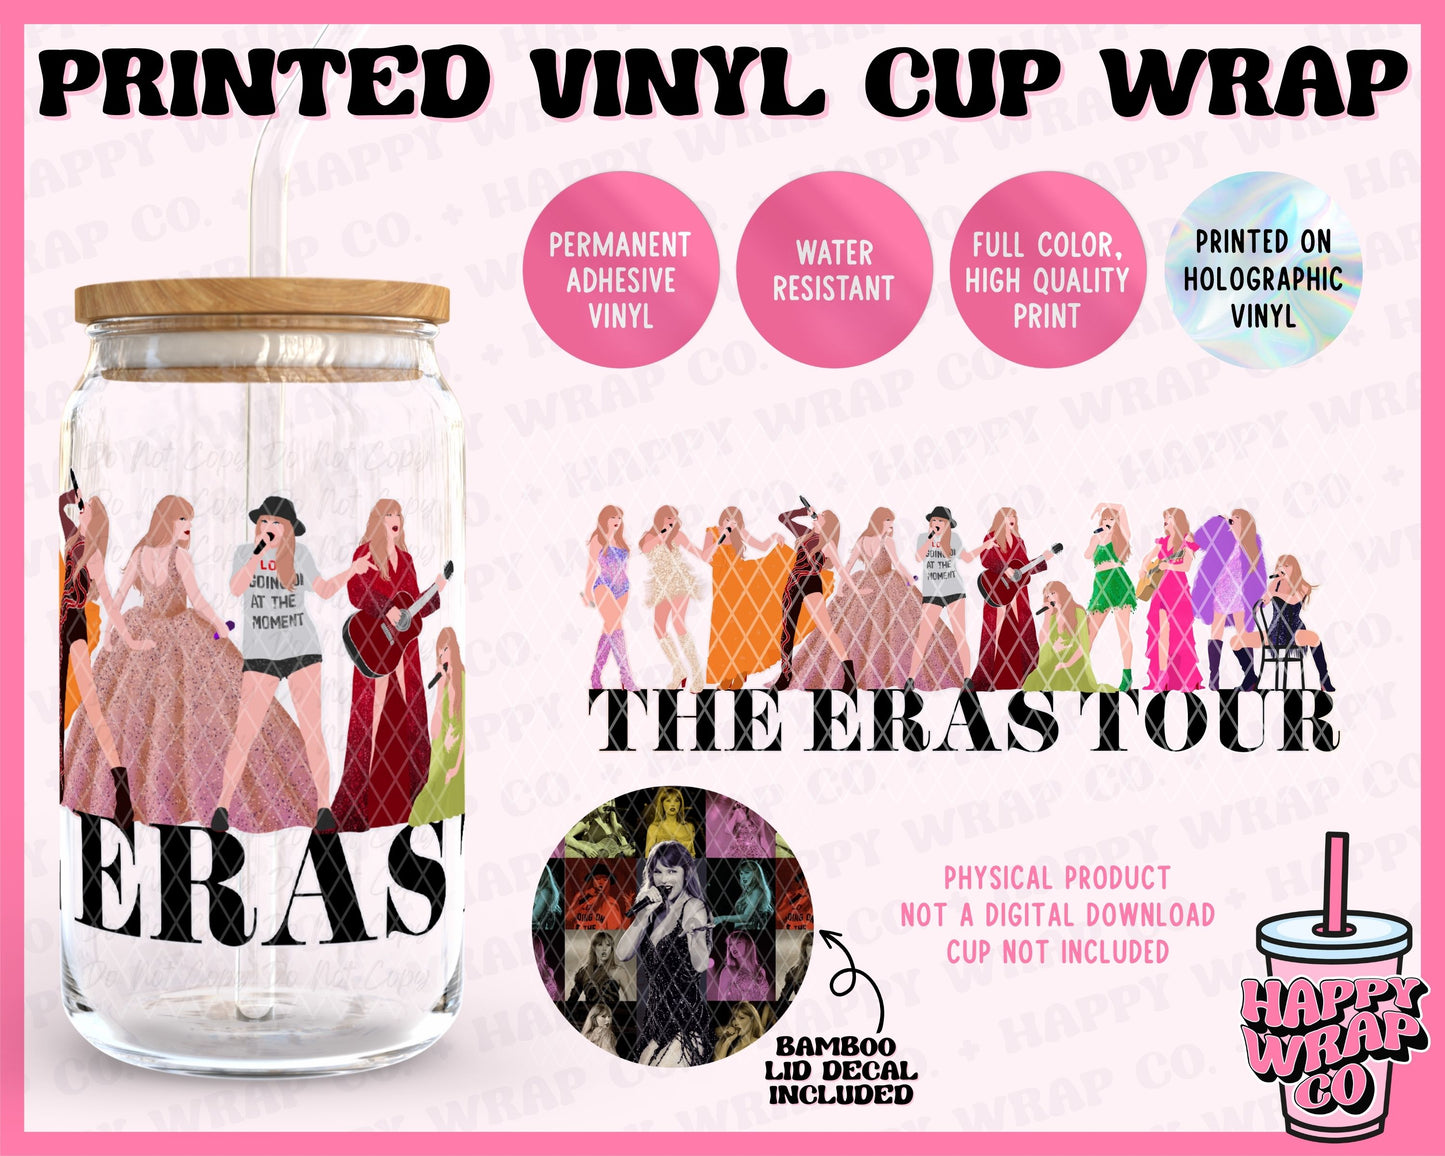 Glass cup wraps (vinyl)